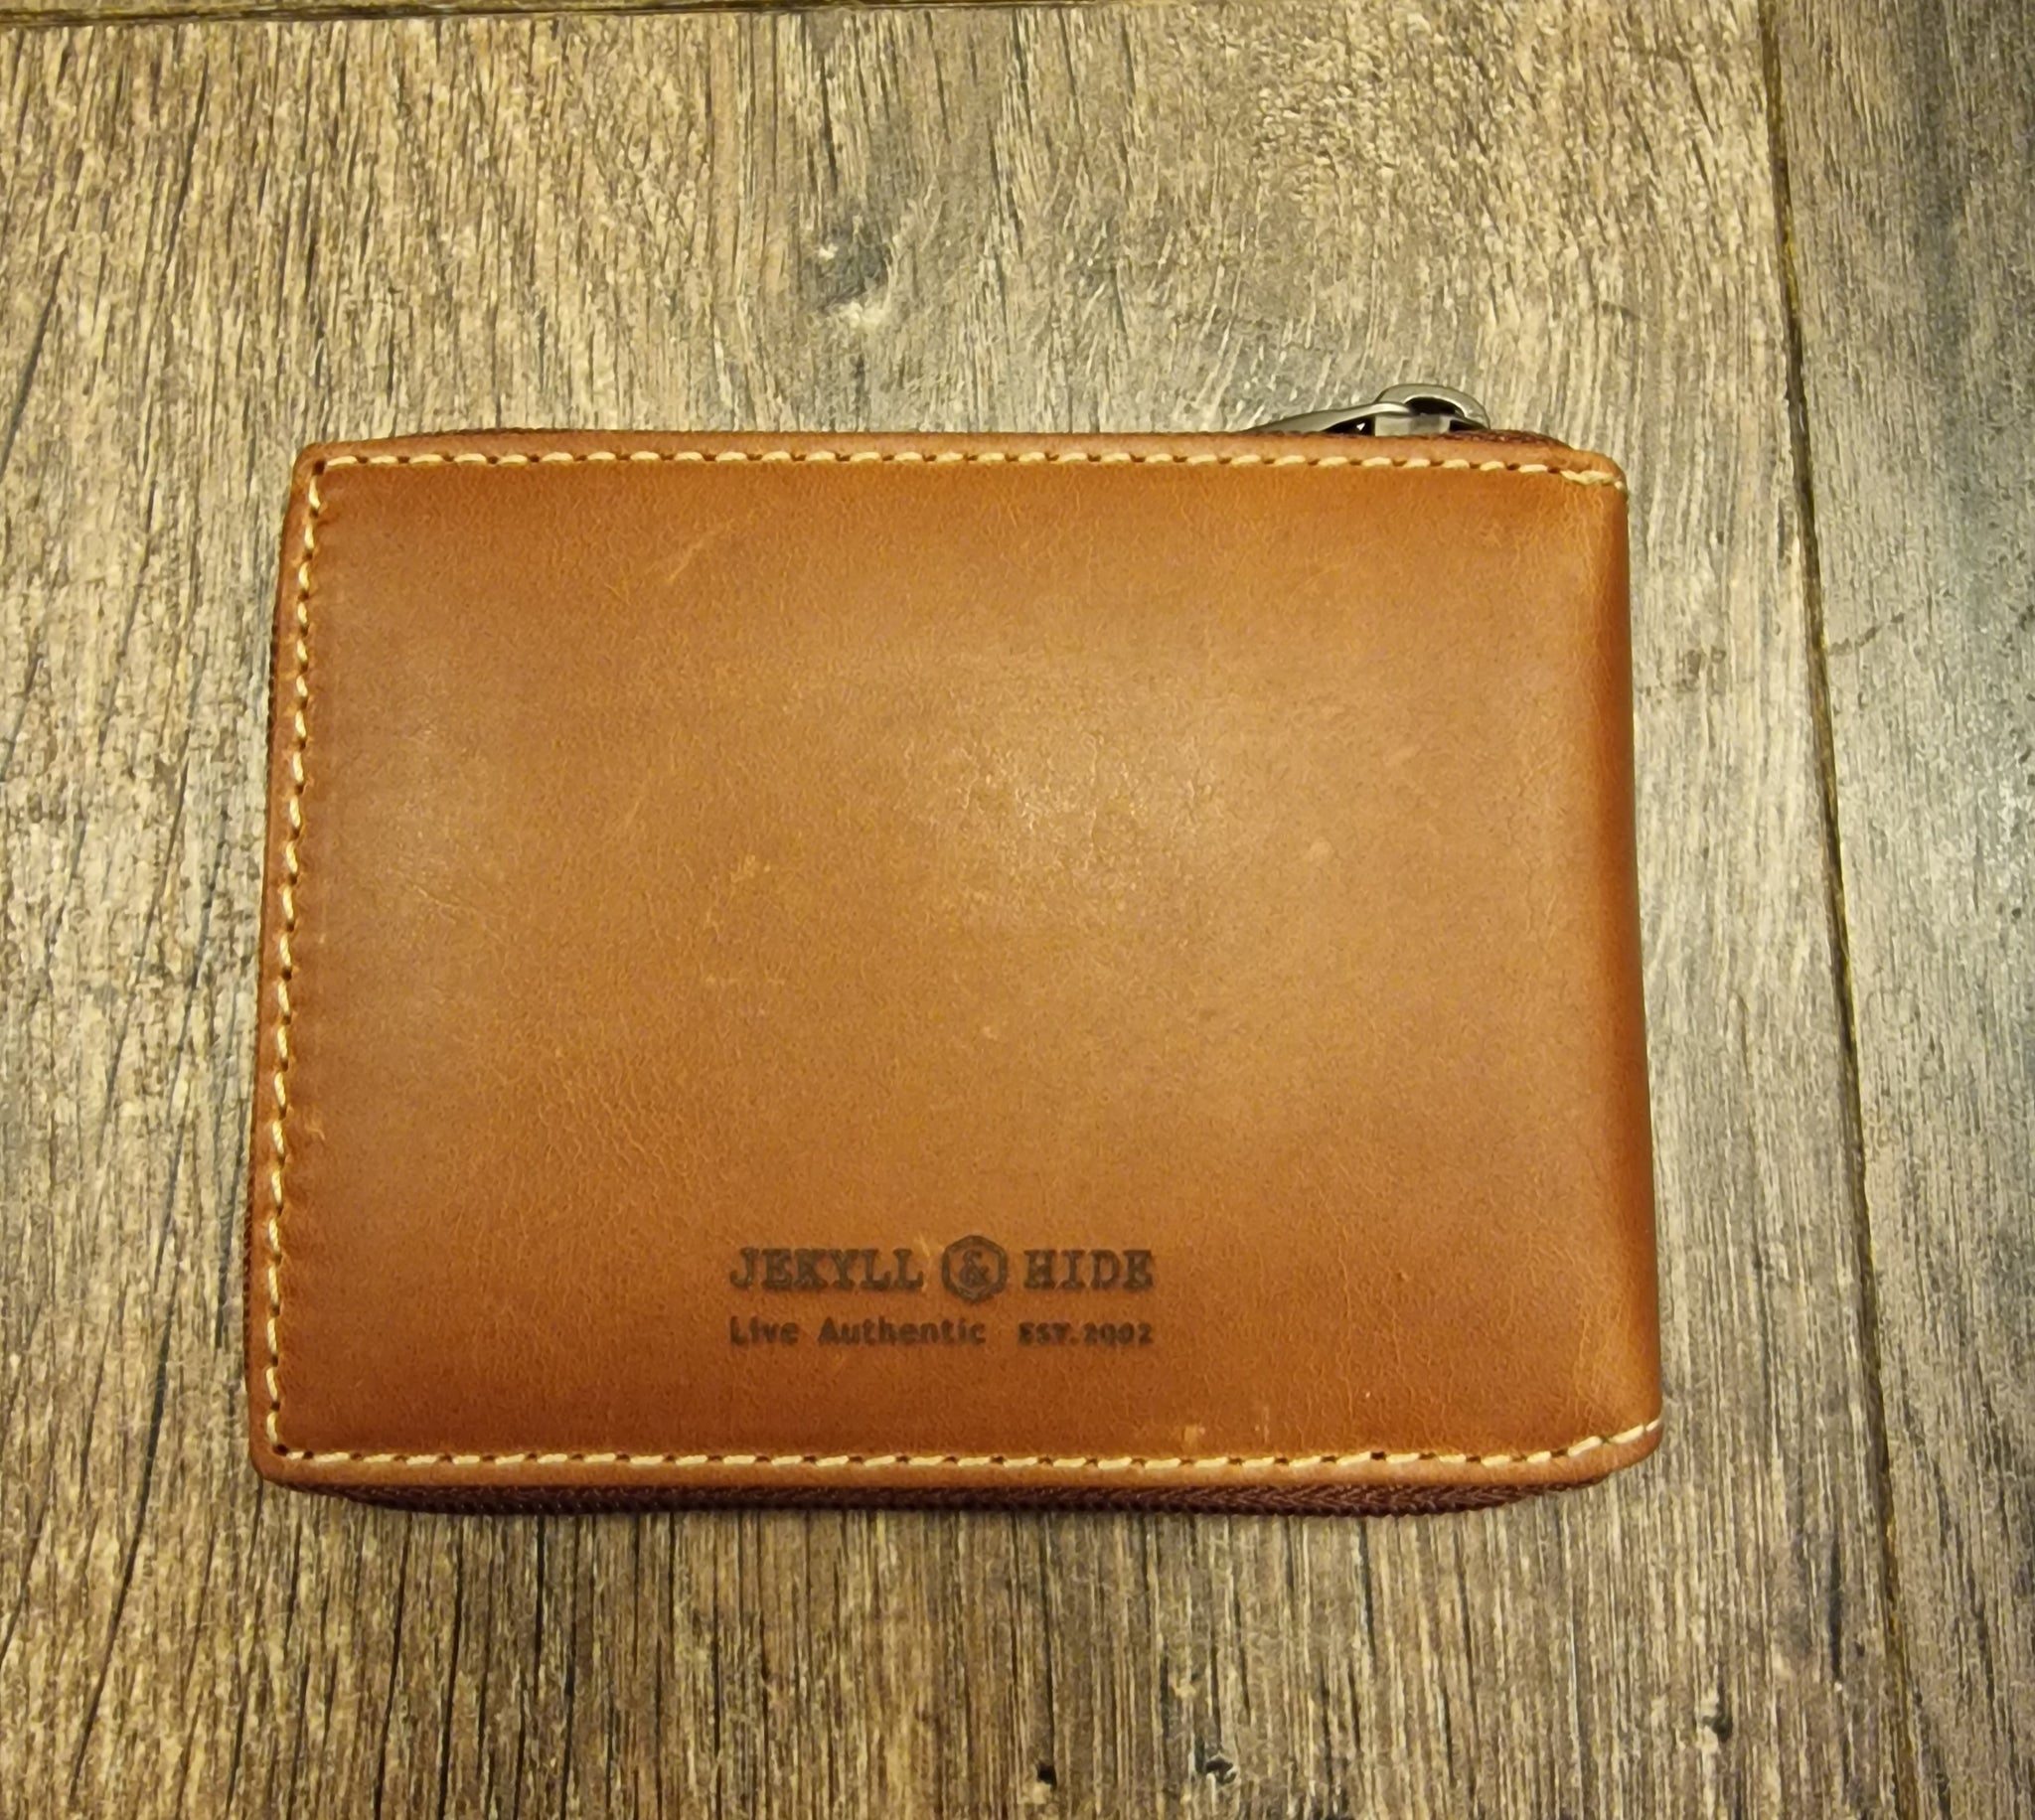 compact zip around wallet